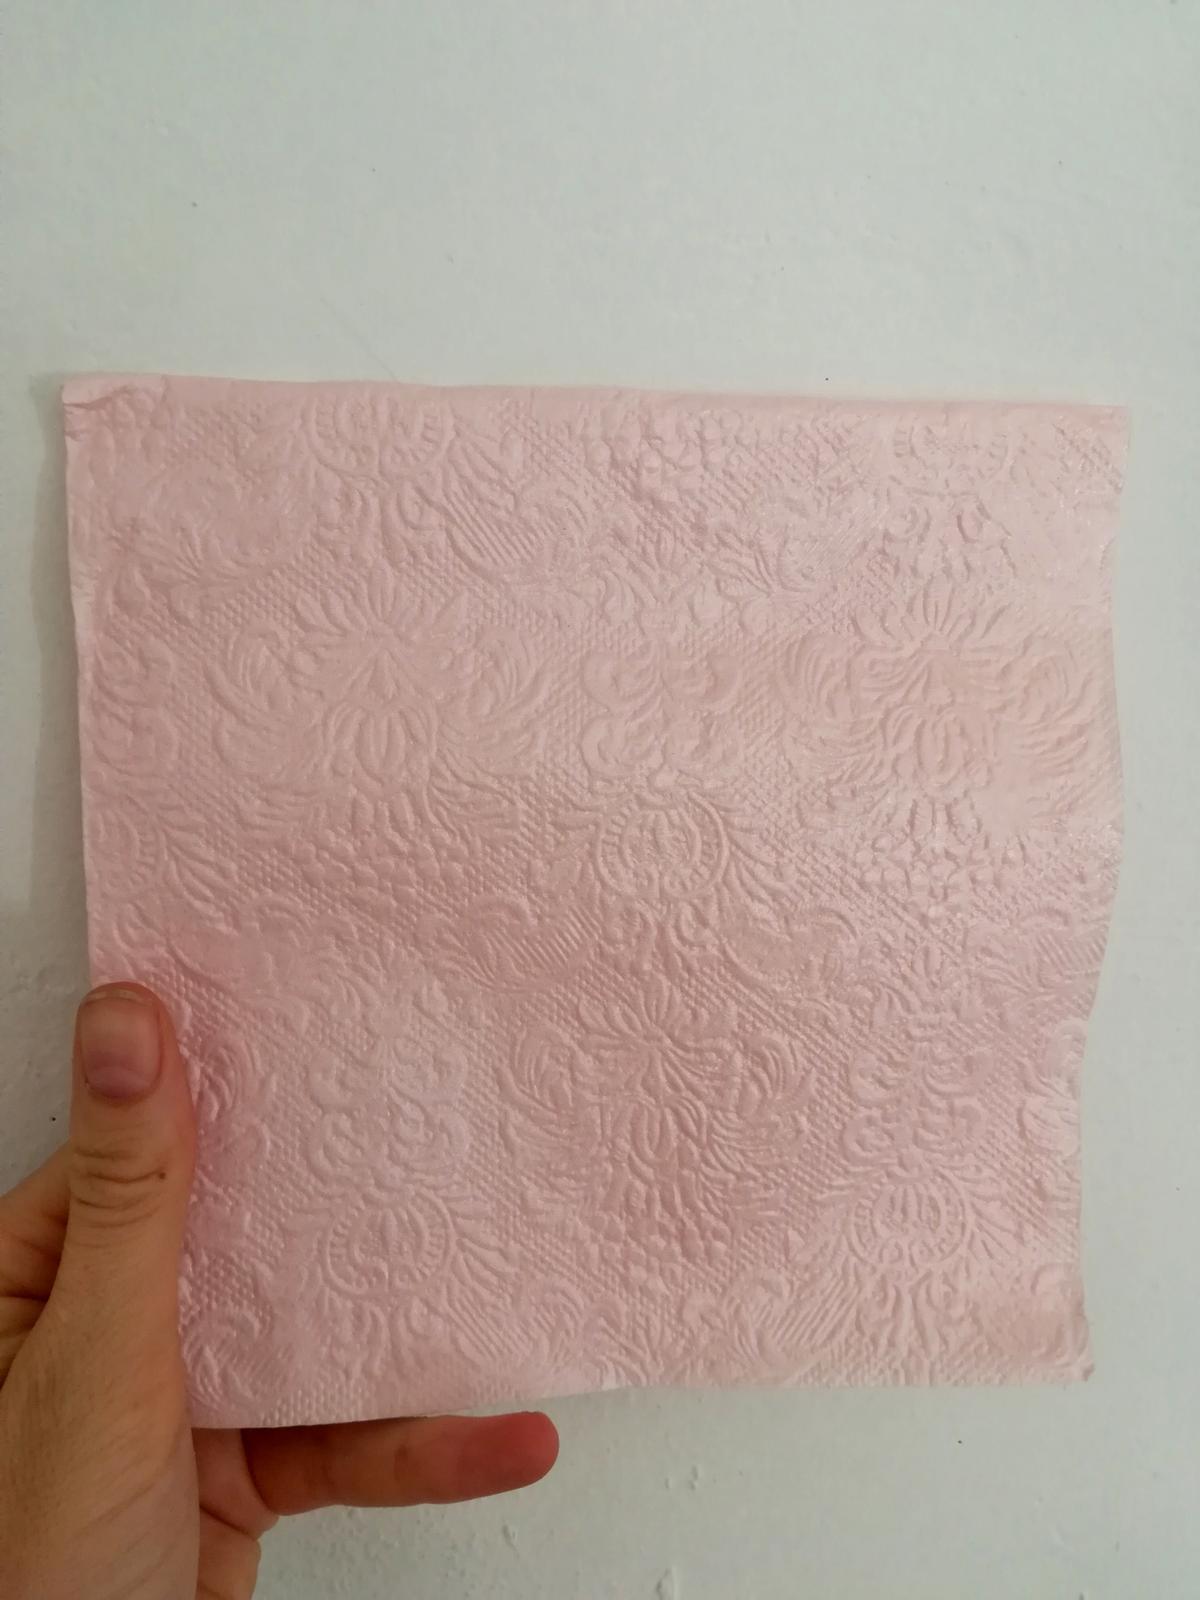 Perleťově růžové ubrousky se vzorem krajky - Obrázek č. 1